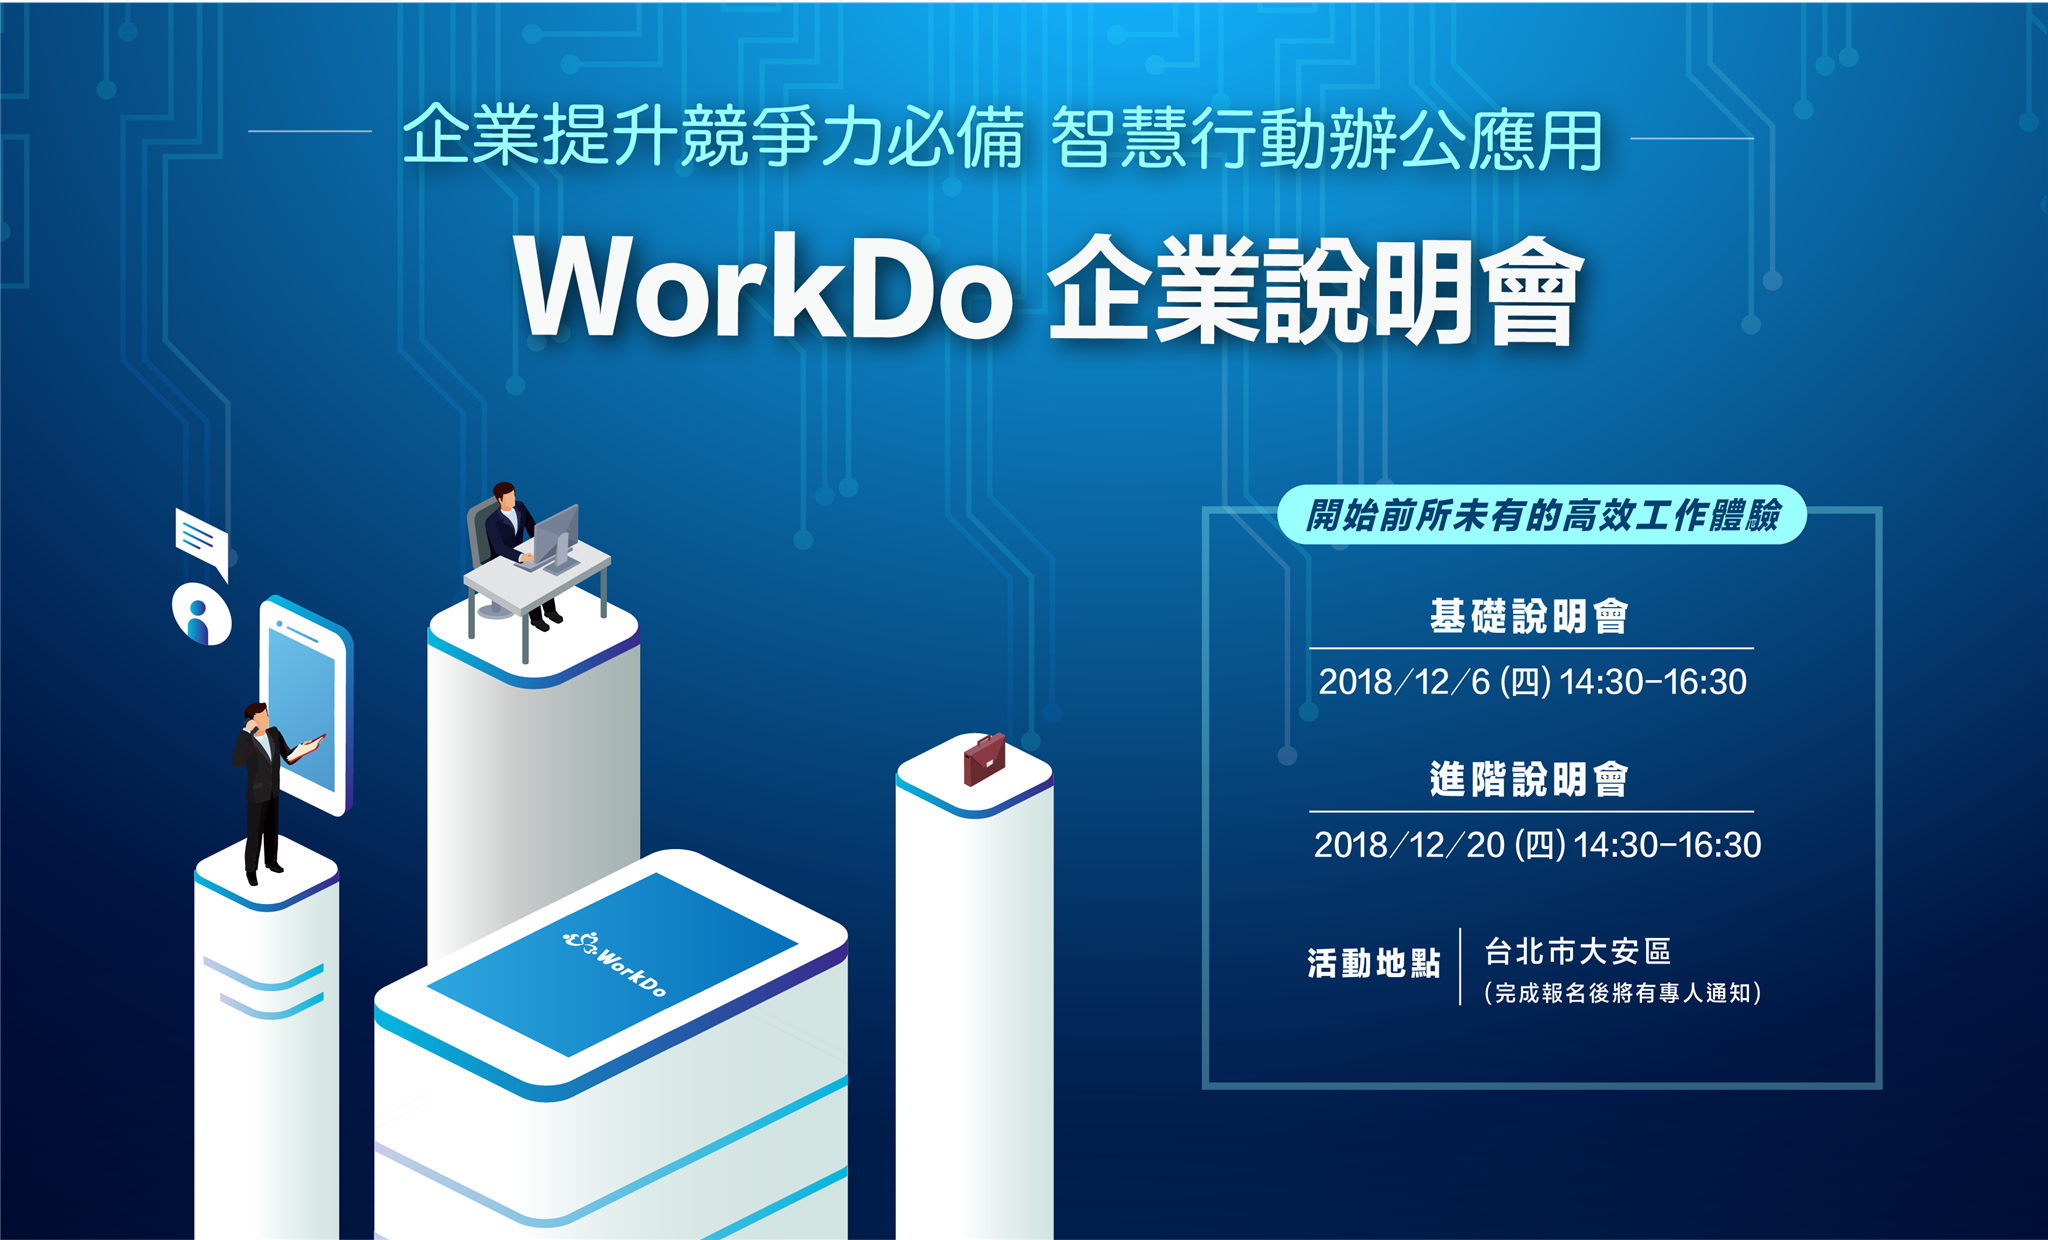 WorkDo,行動辦公,企業協作